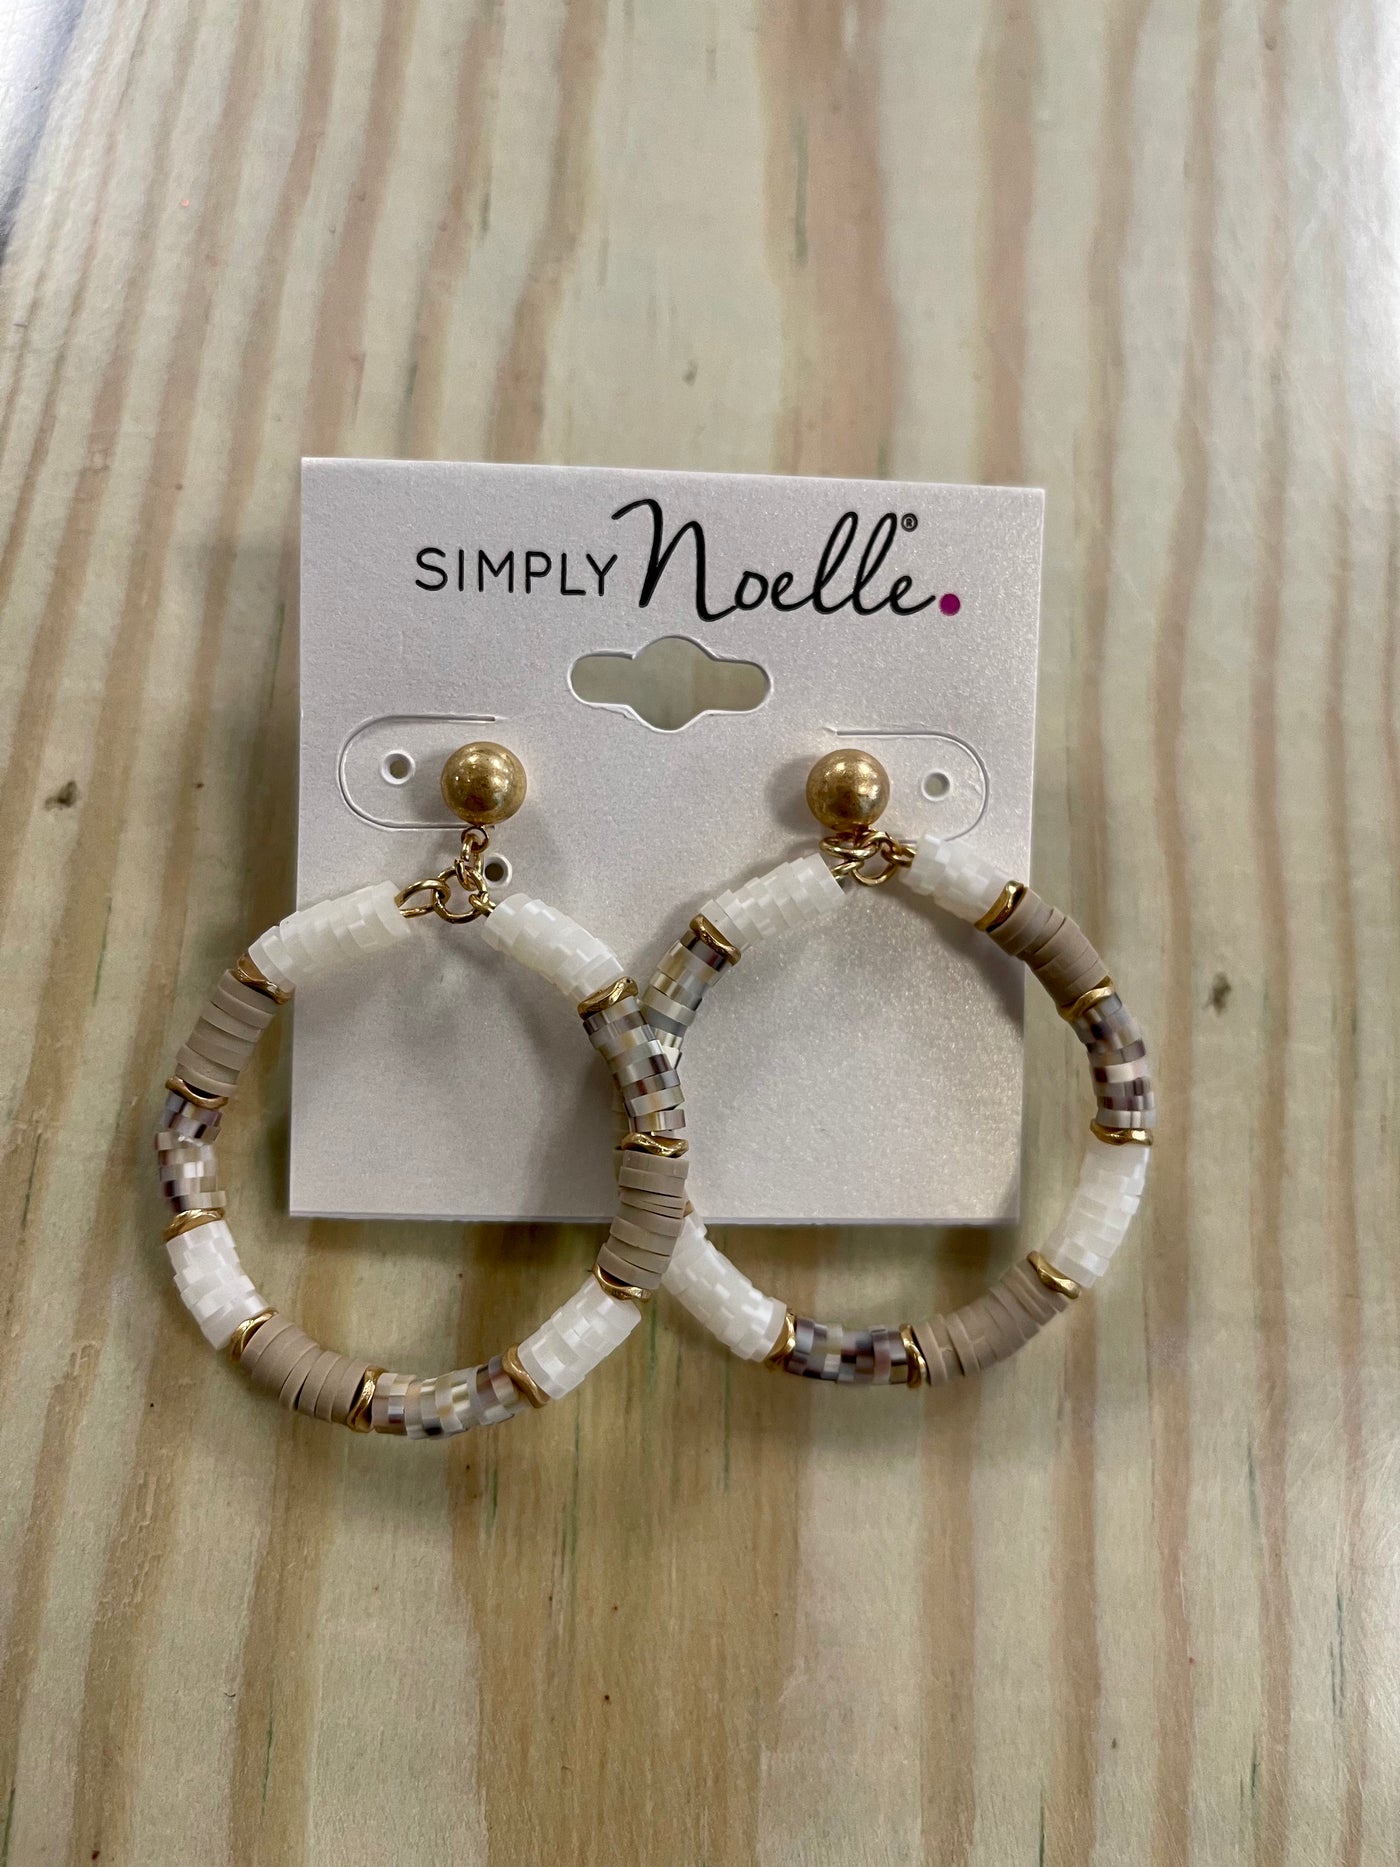 Simply Noelle Neutral Beaded Earrings